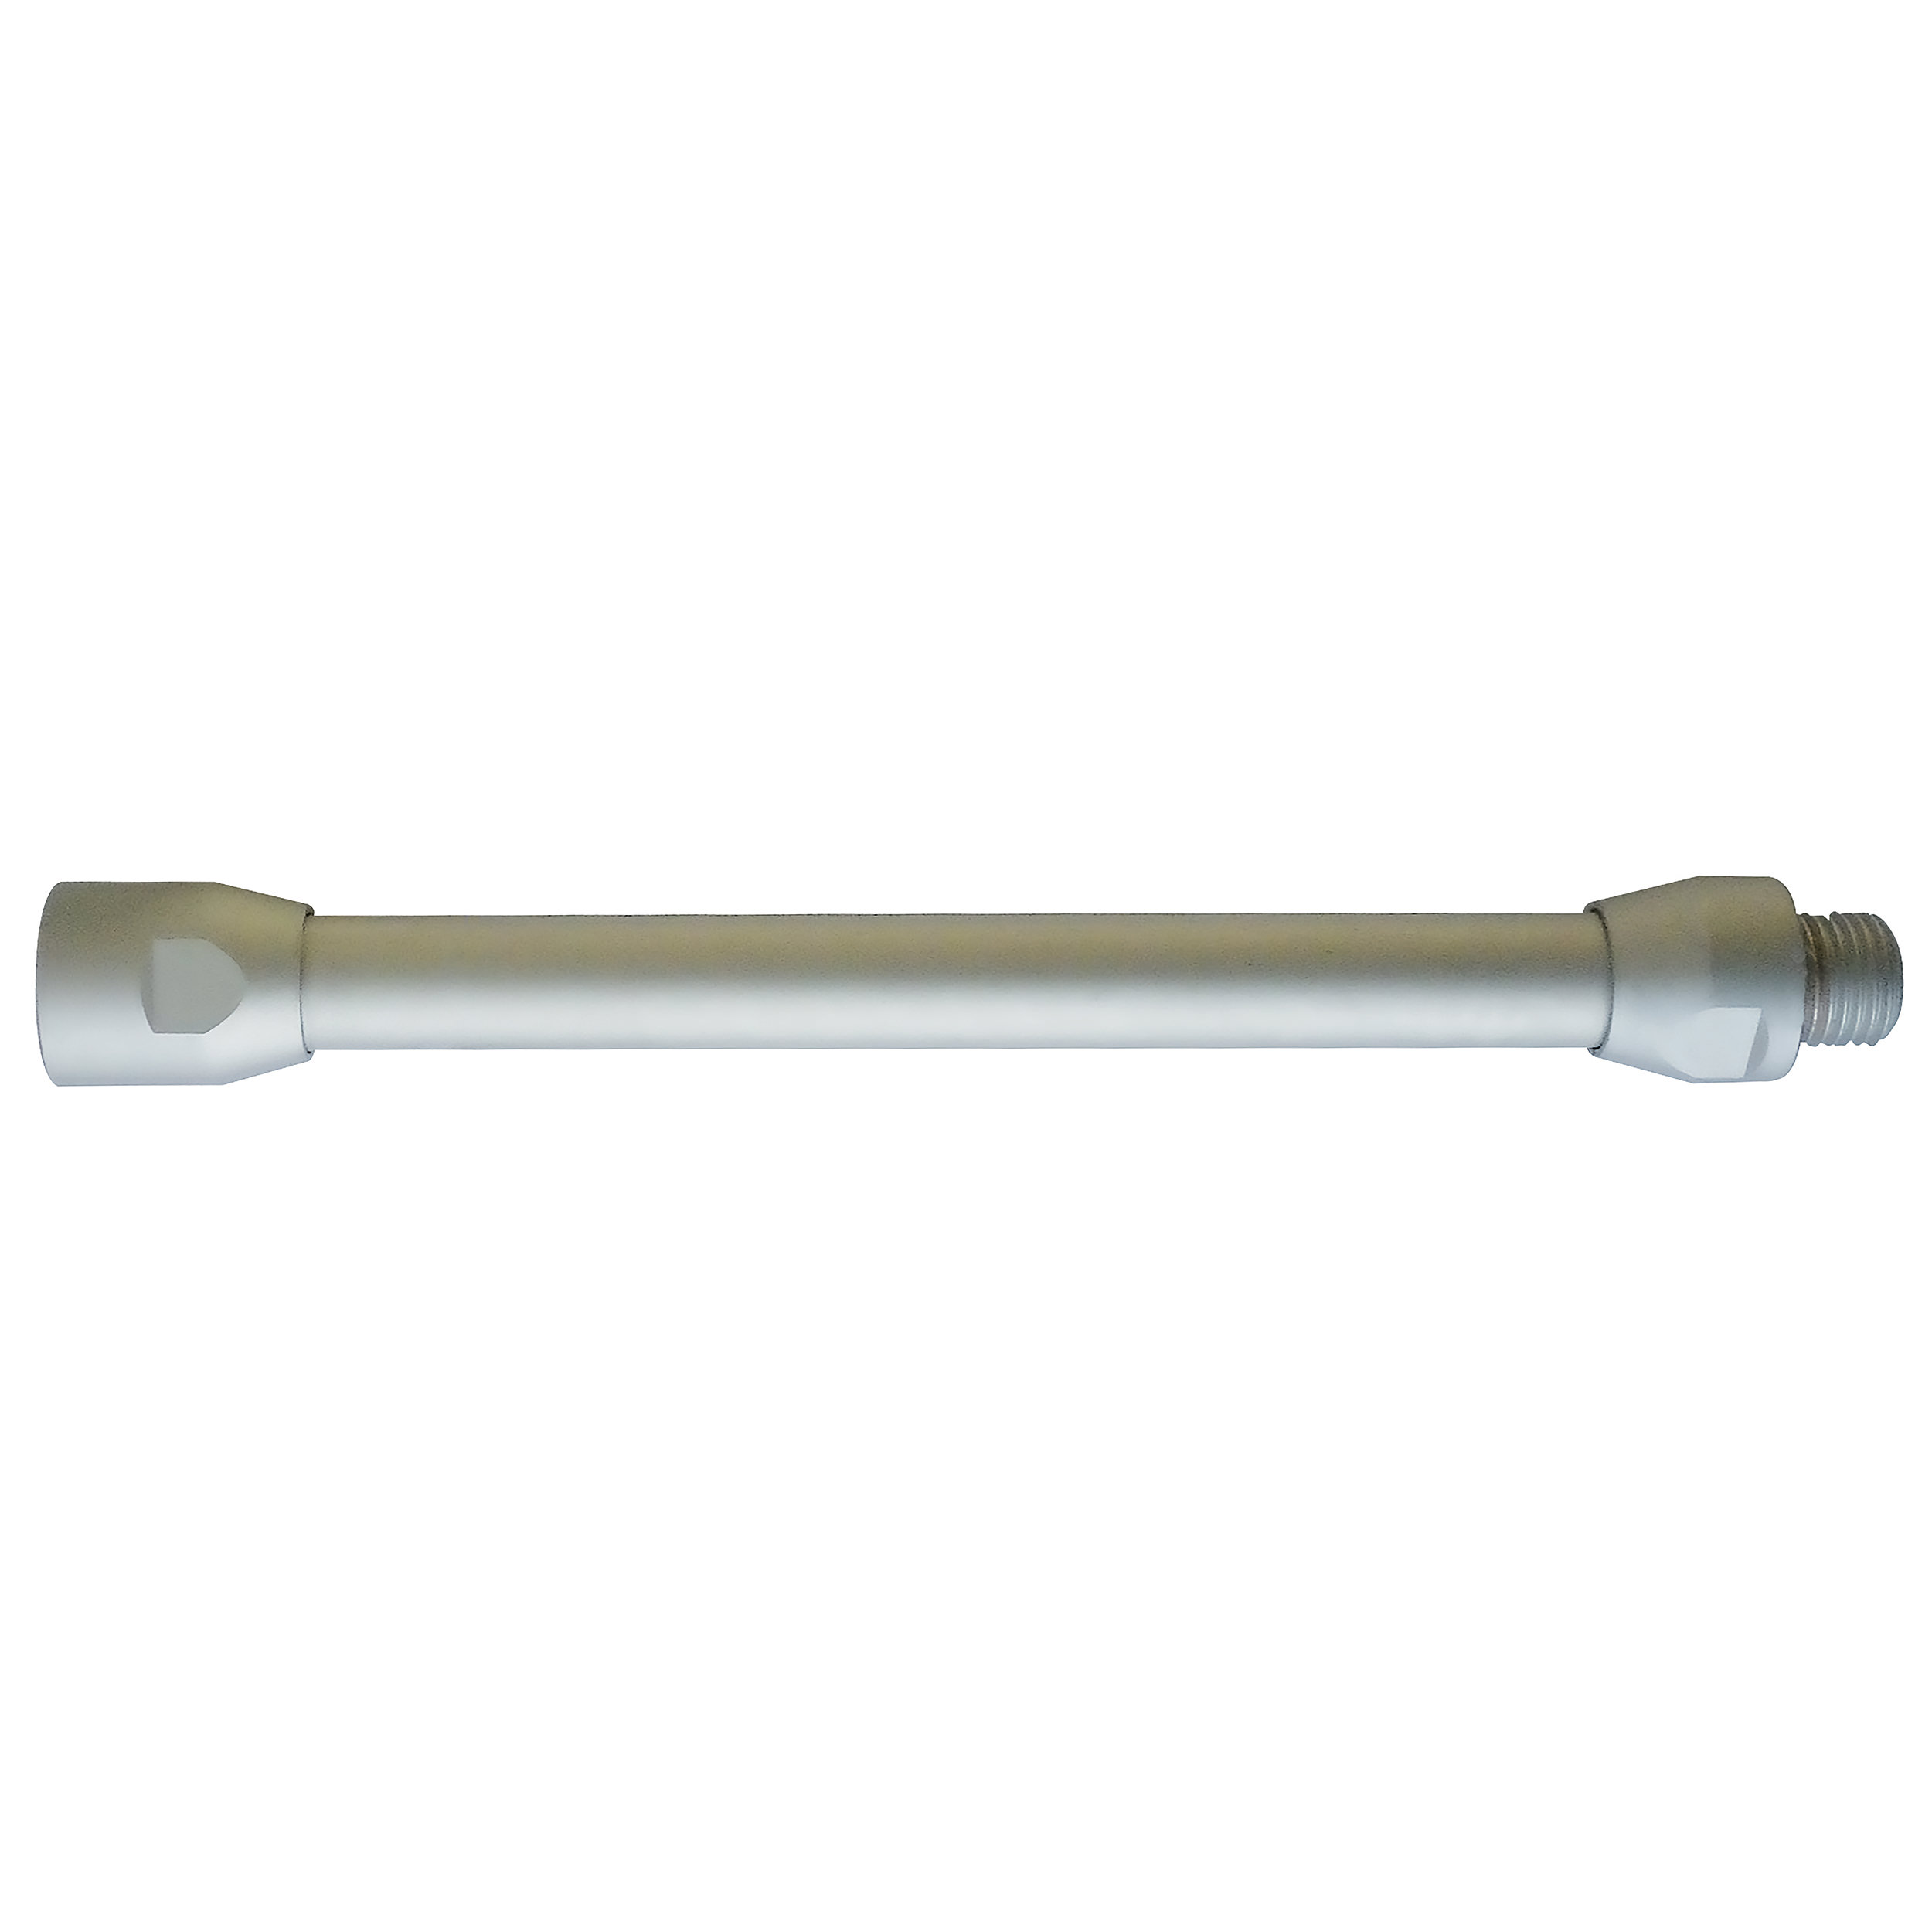 Blaspistolen-Verlängerung, gerade, 150 mm, Bohrungs-Ø8 mm, Eingang: M12 × 1,25 a, drehbar, Ausgang: M12 × 1,25 i, fest; Alu